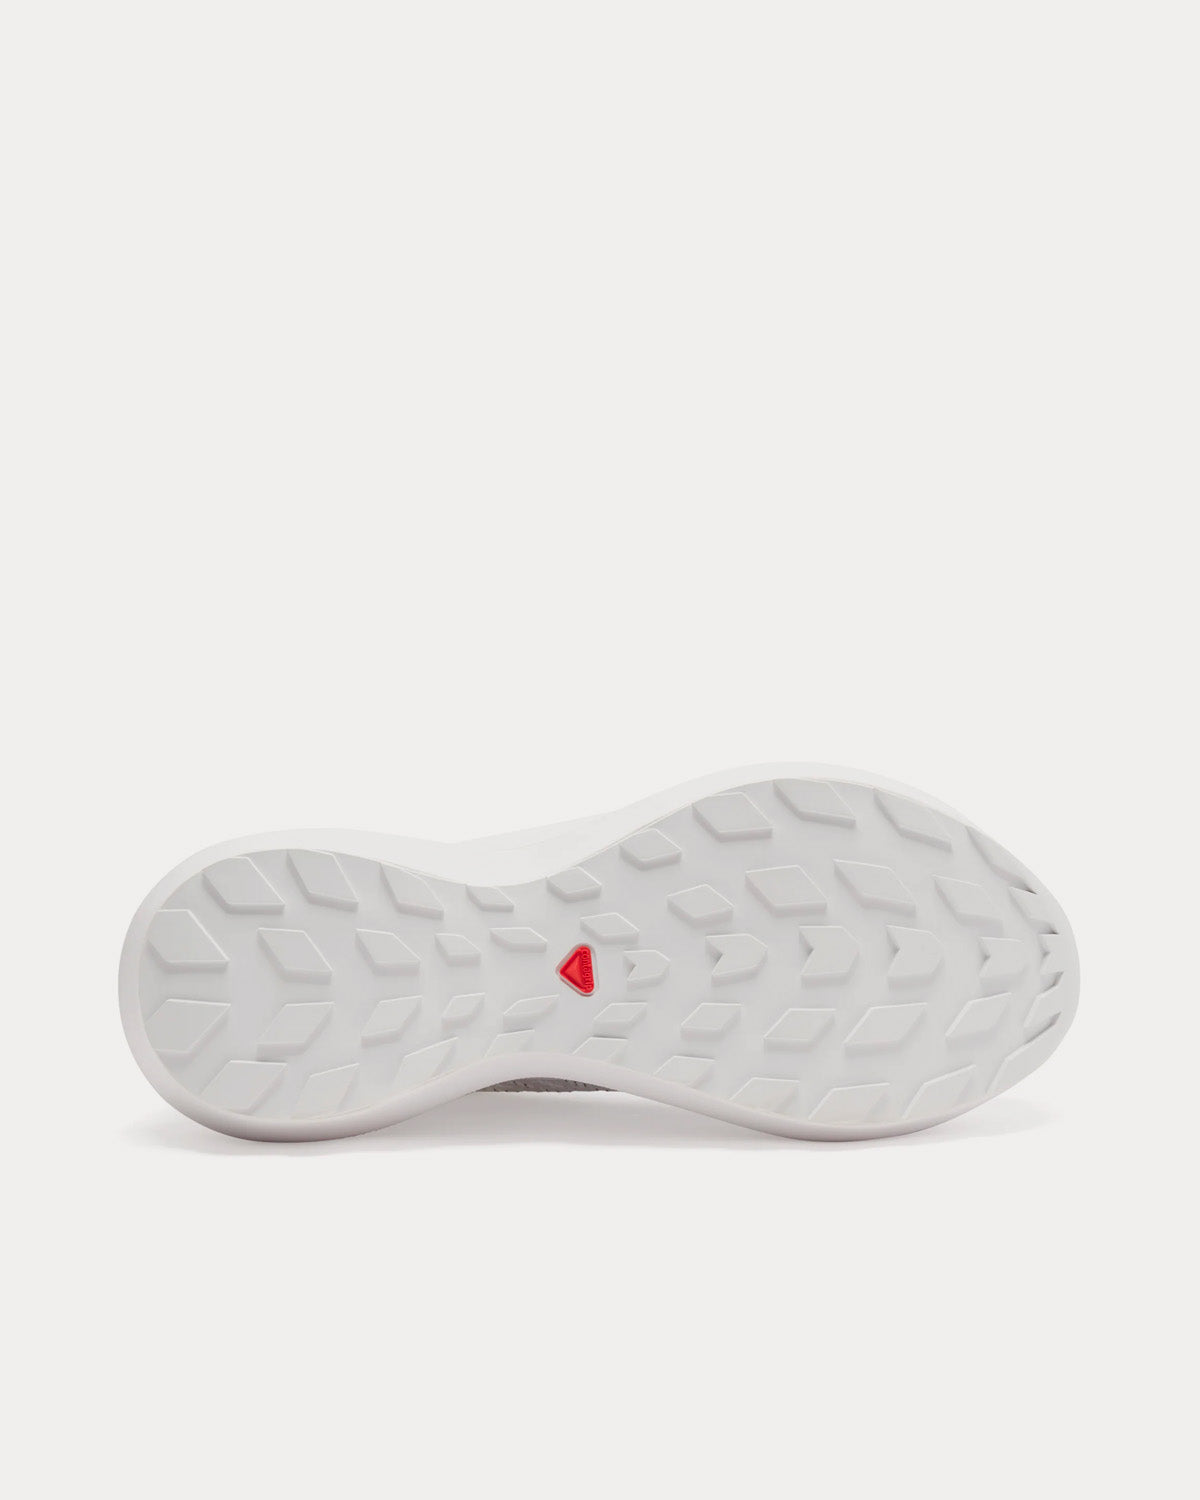 Salomon x Comme des Garçons - Pulsar Platform White Low Top Sneakers